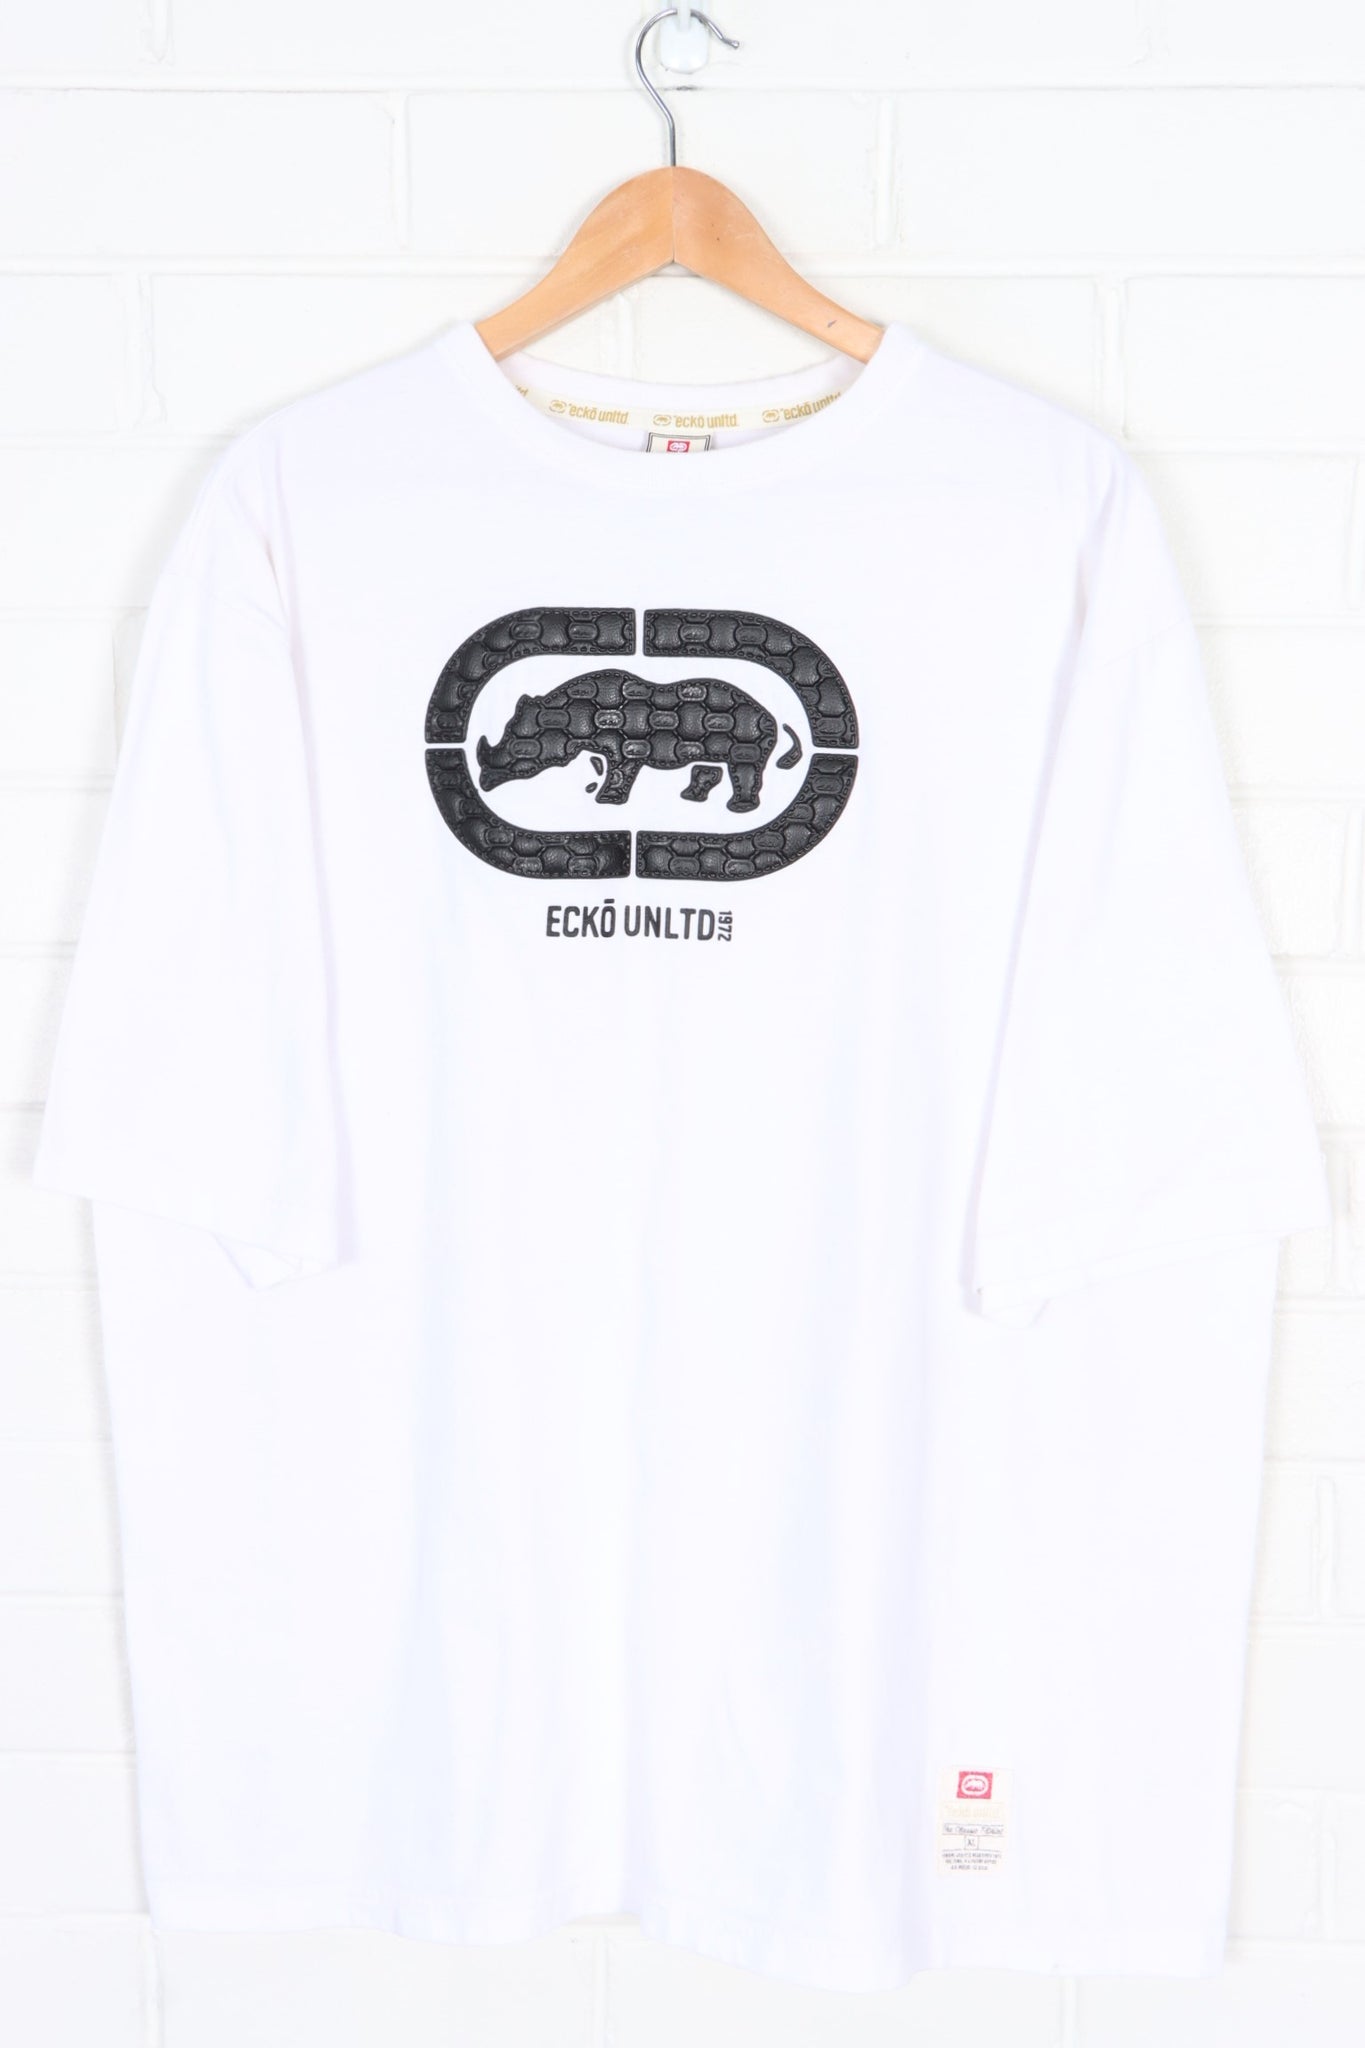 ECKO UNLTD Leather Patch Logo White T-Shirt (XL) | Vintage Sole 